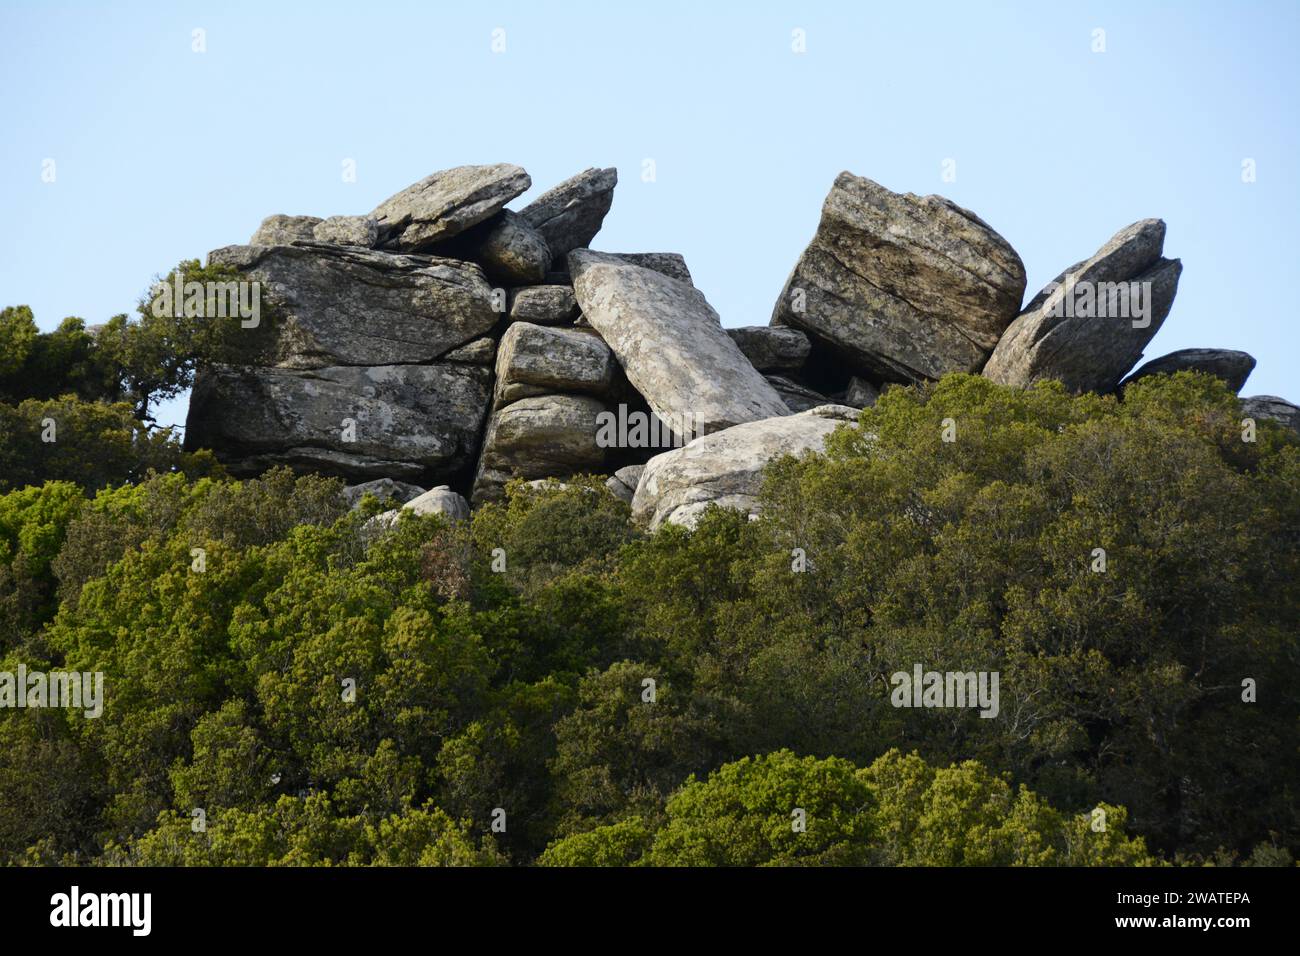 Un groupe de rochers et une forêt sur une montagne, sur la côte sud de l'île grecque d'Ikaria, près de Karkinagri, Grèce. Banque D'Images